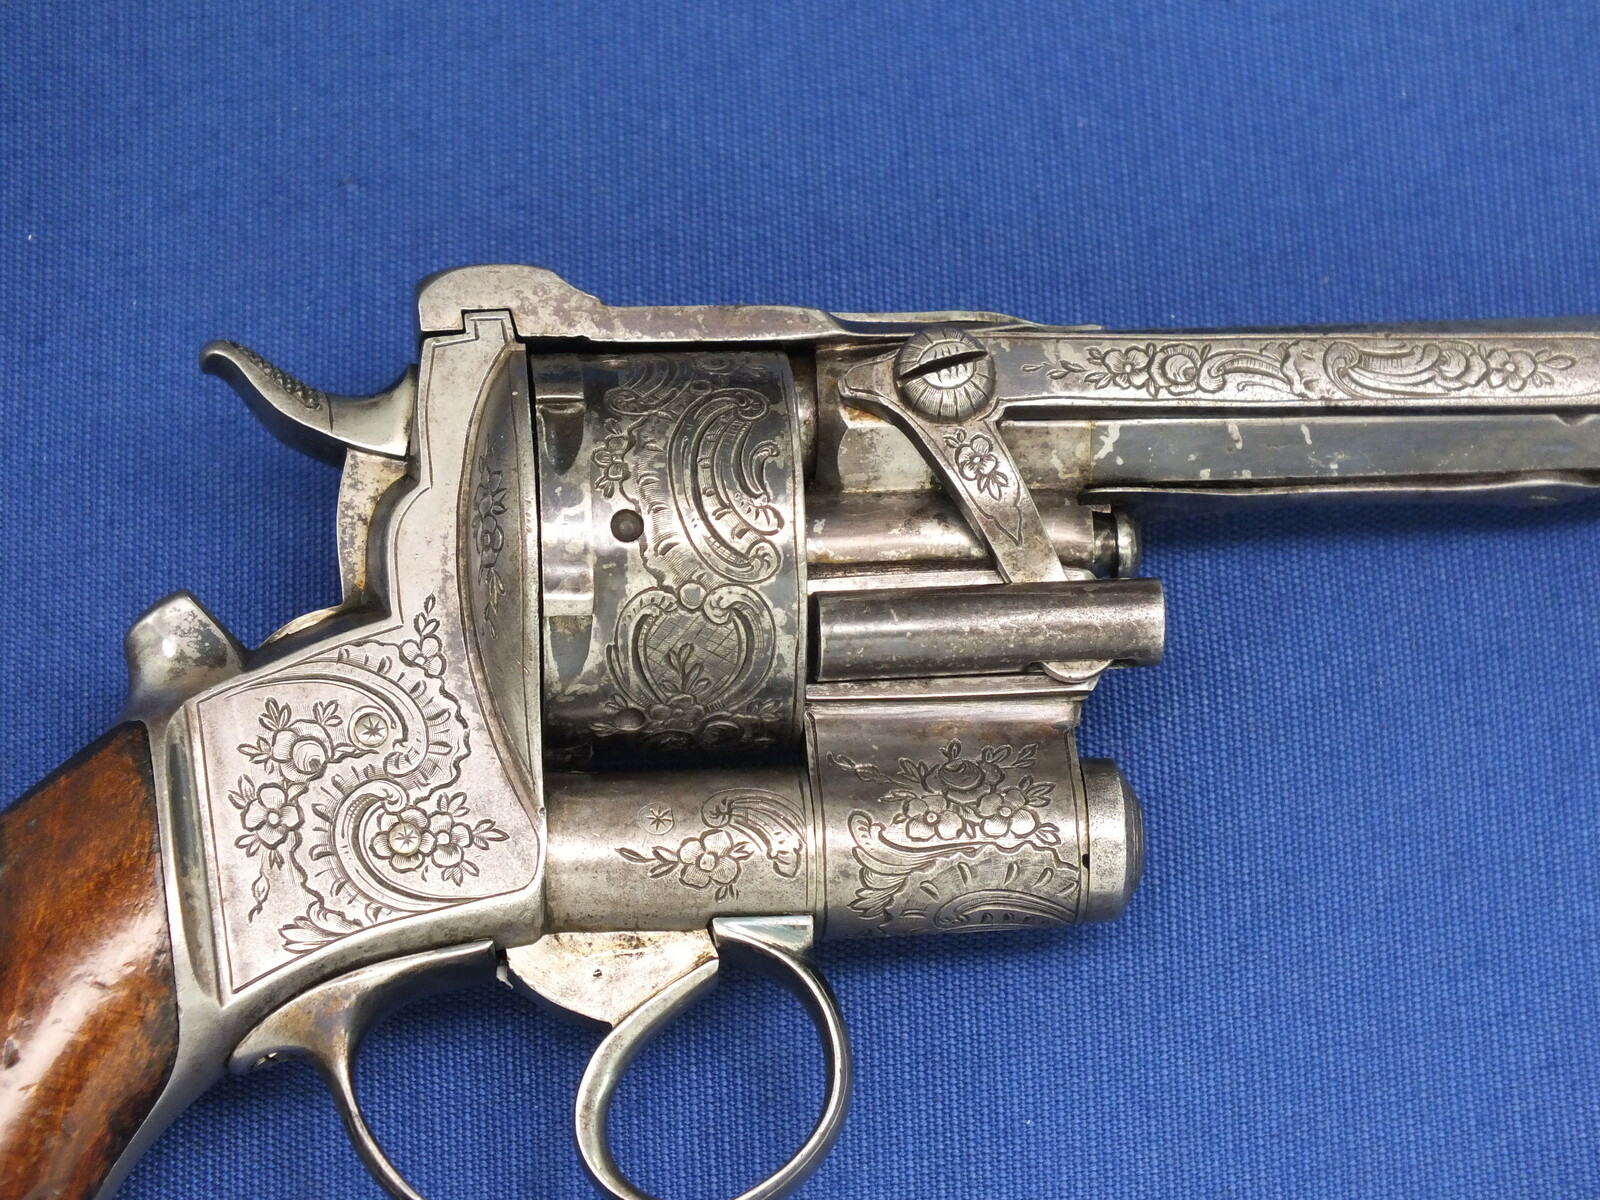 A fine antique scarce 19th century French Revolver signed Le Page Moutier  Inventeur Brvt a Paris,